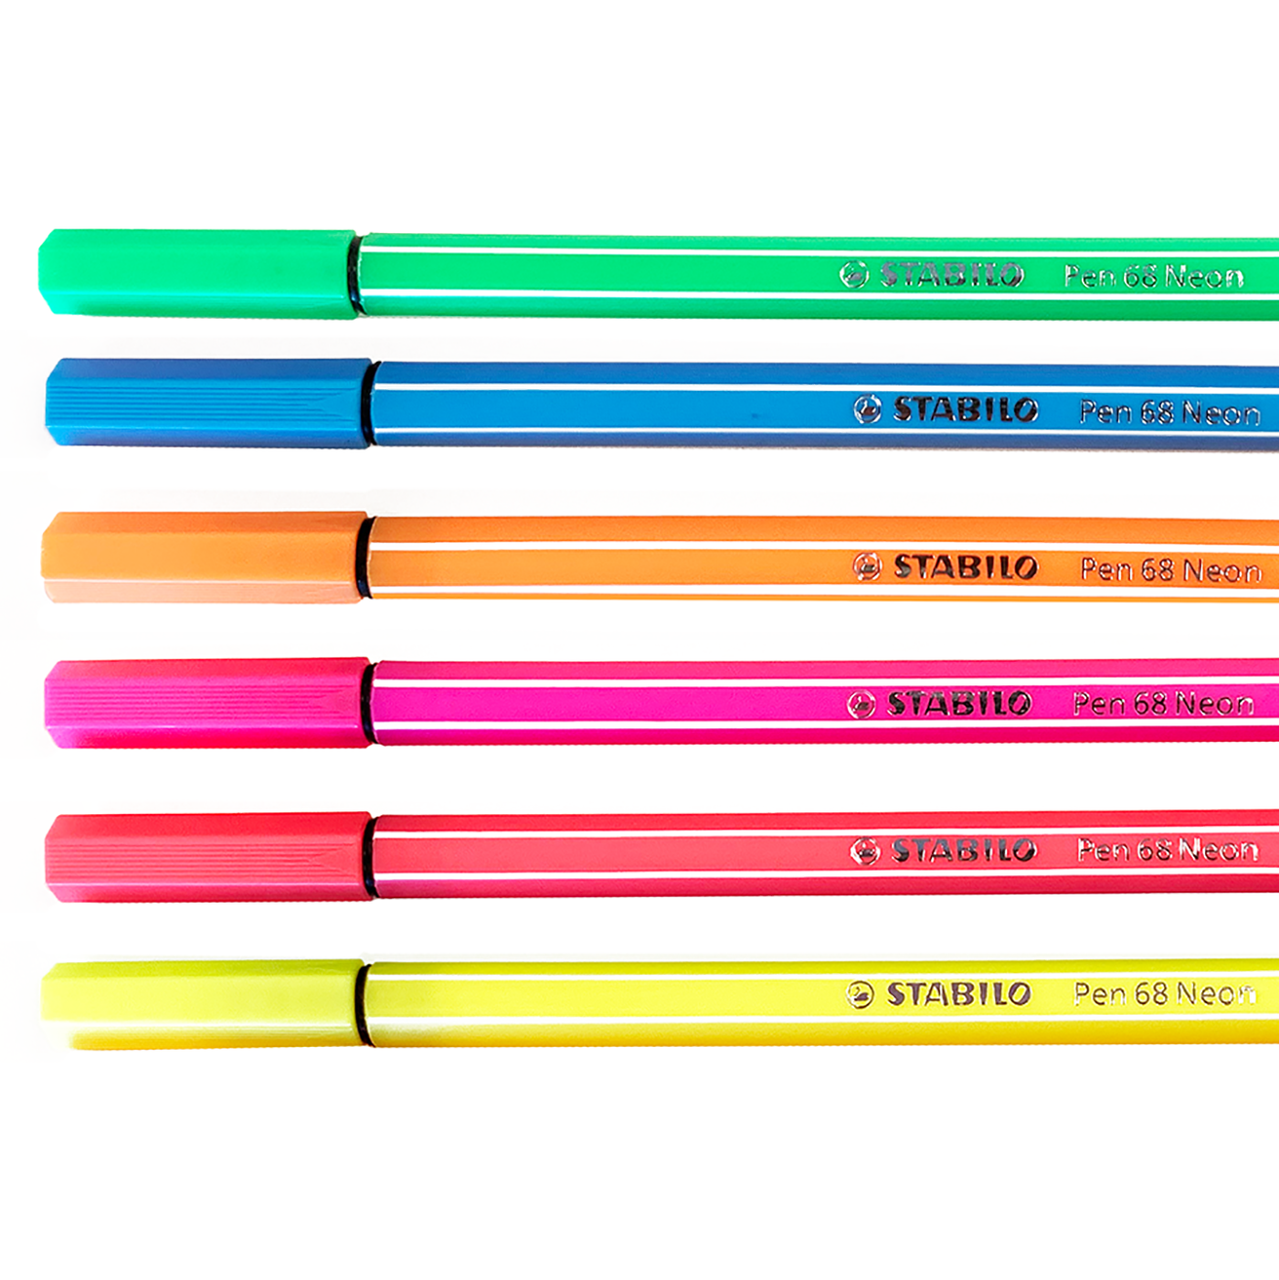 STABILO Pen 68 Set, 8-Colors, Pastel 